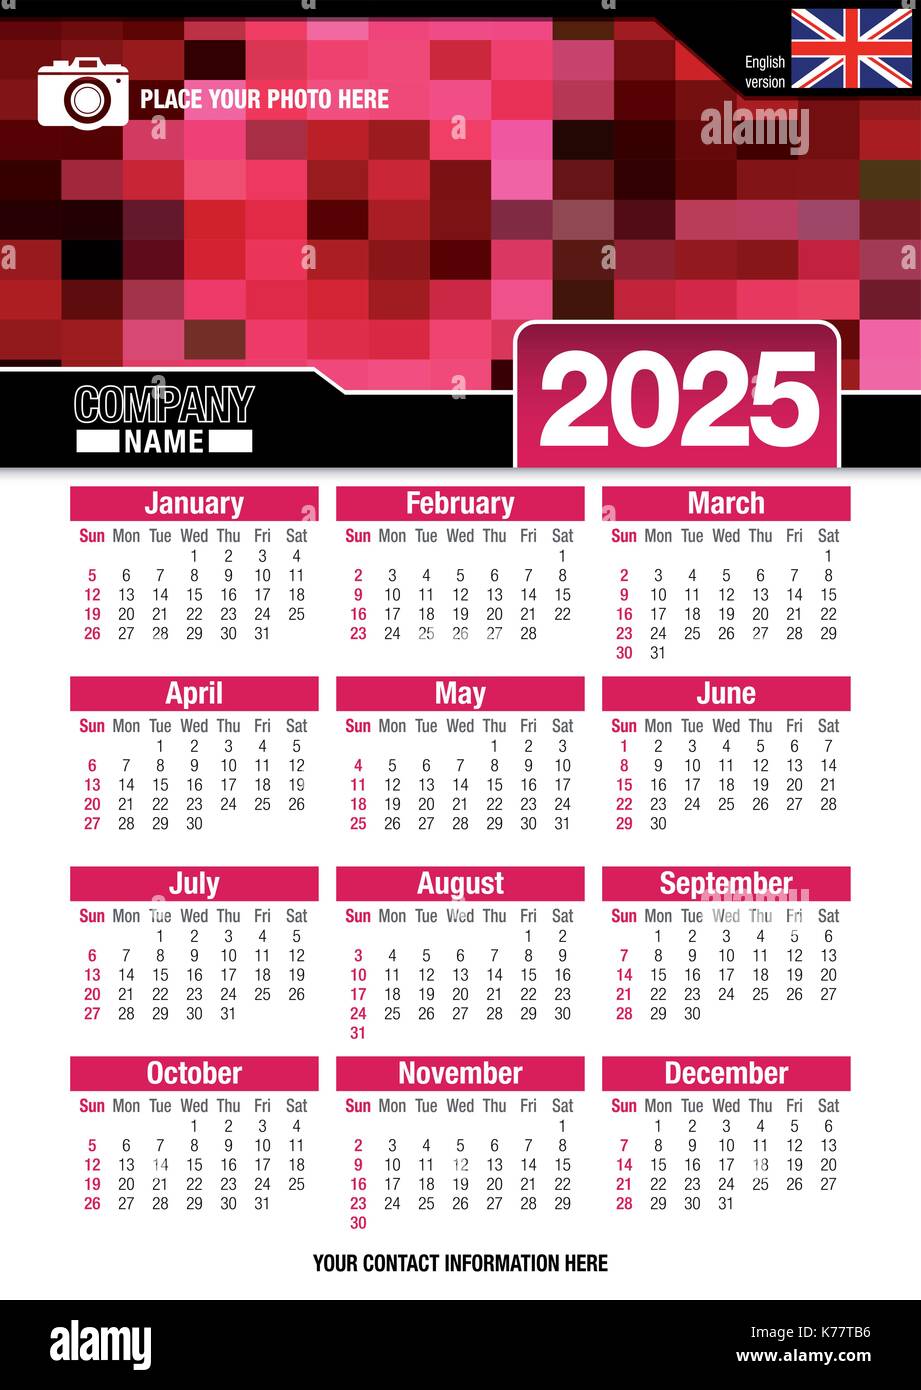 Utile calendario da parete 2025 con design di colori rosso mosaico. Formato A4 verticale. Dimensioni: 210mm x 297mm. Versione Inglese - immagine vettoriale Illustrazione Vettoriale